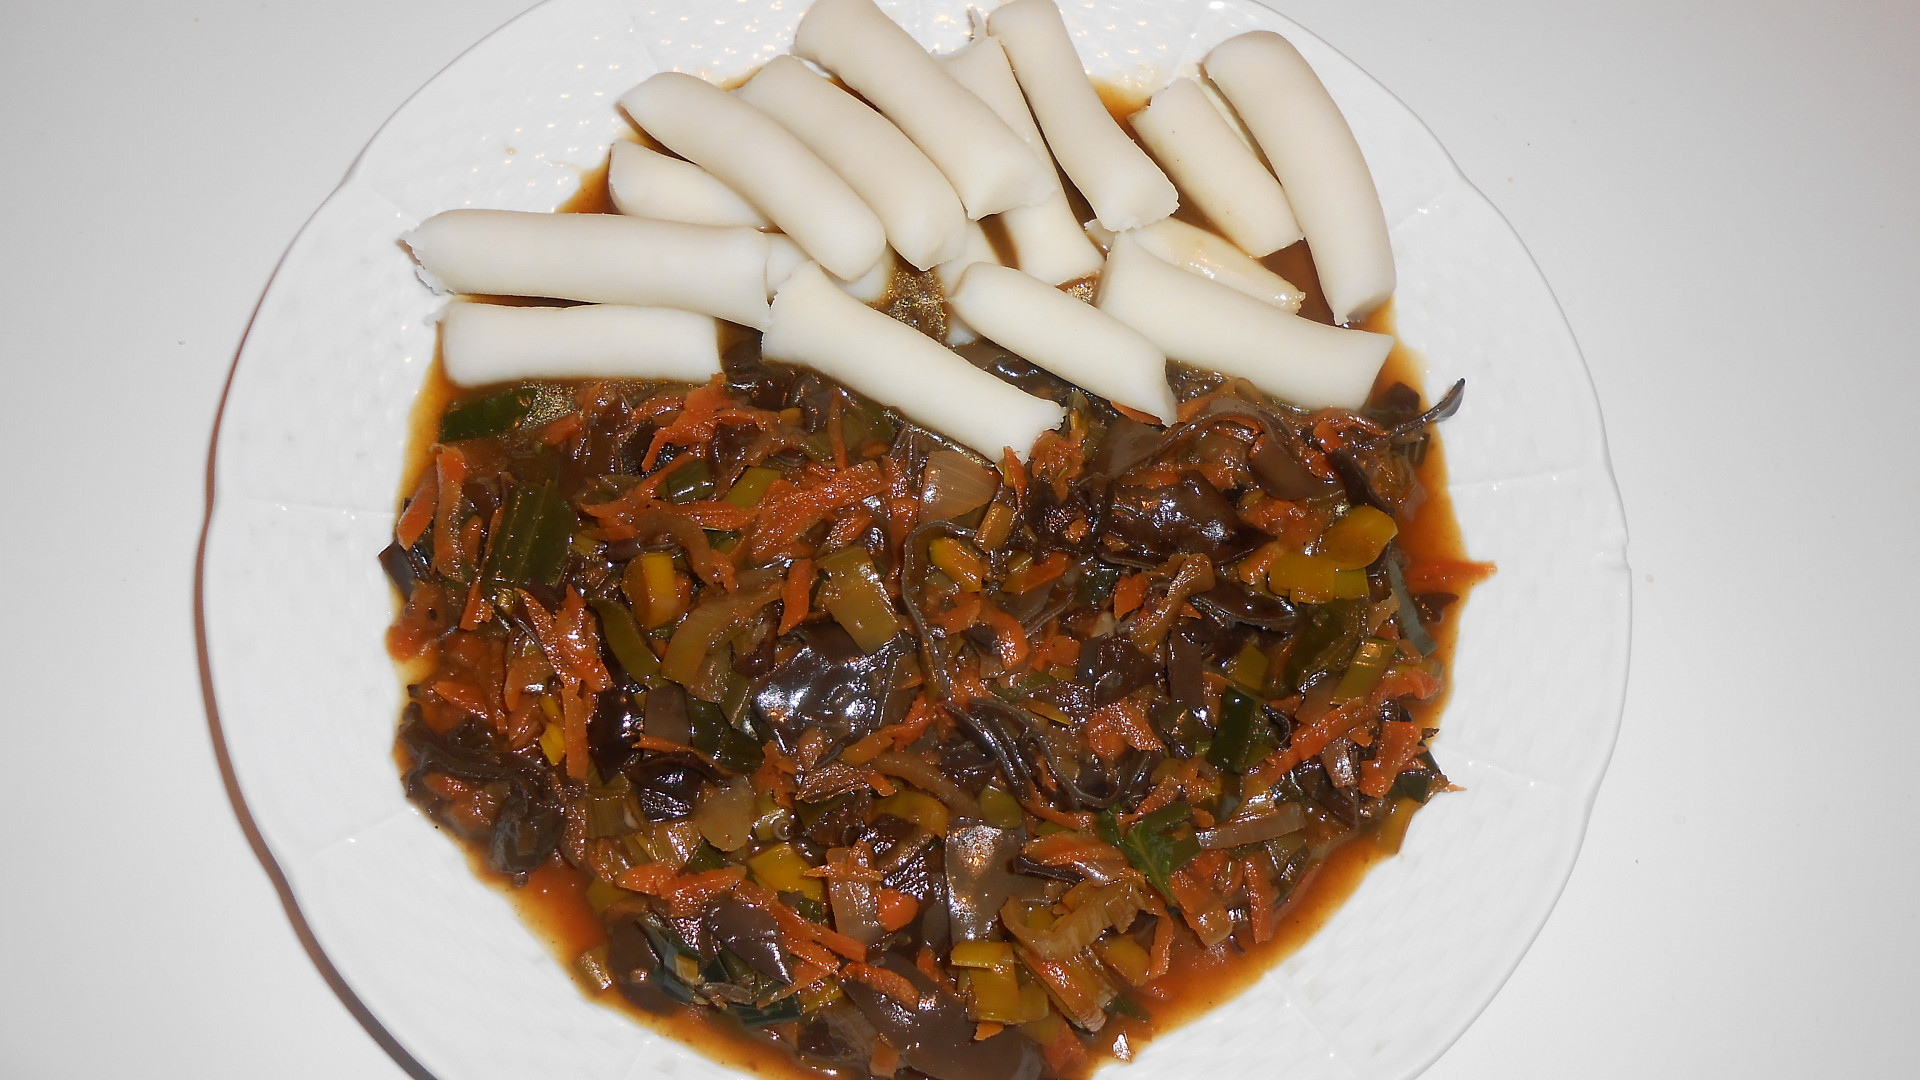 Rýžové bezlepkové noky a čína z Jidášova ucha (Dělená strava podle LK - Kytičky + zelenina)